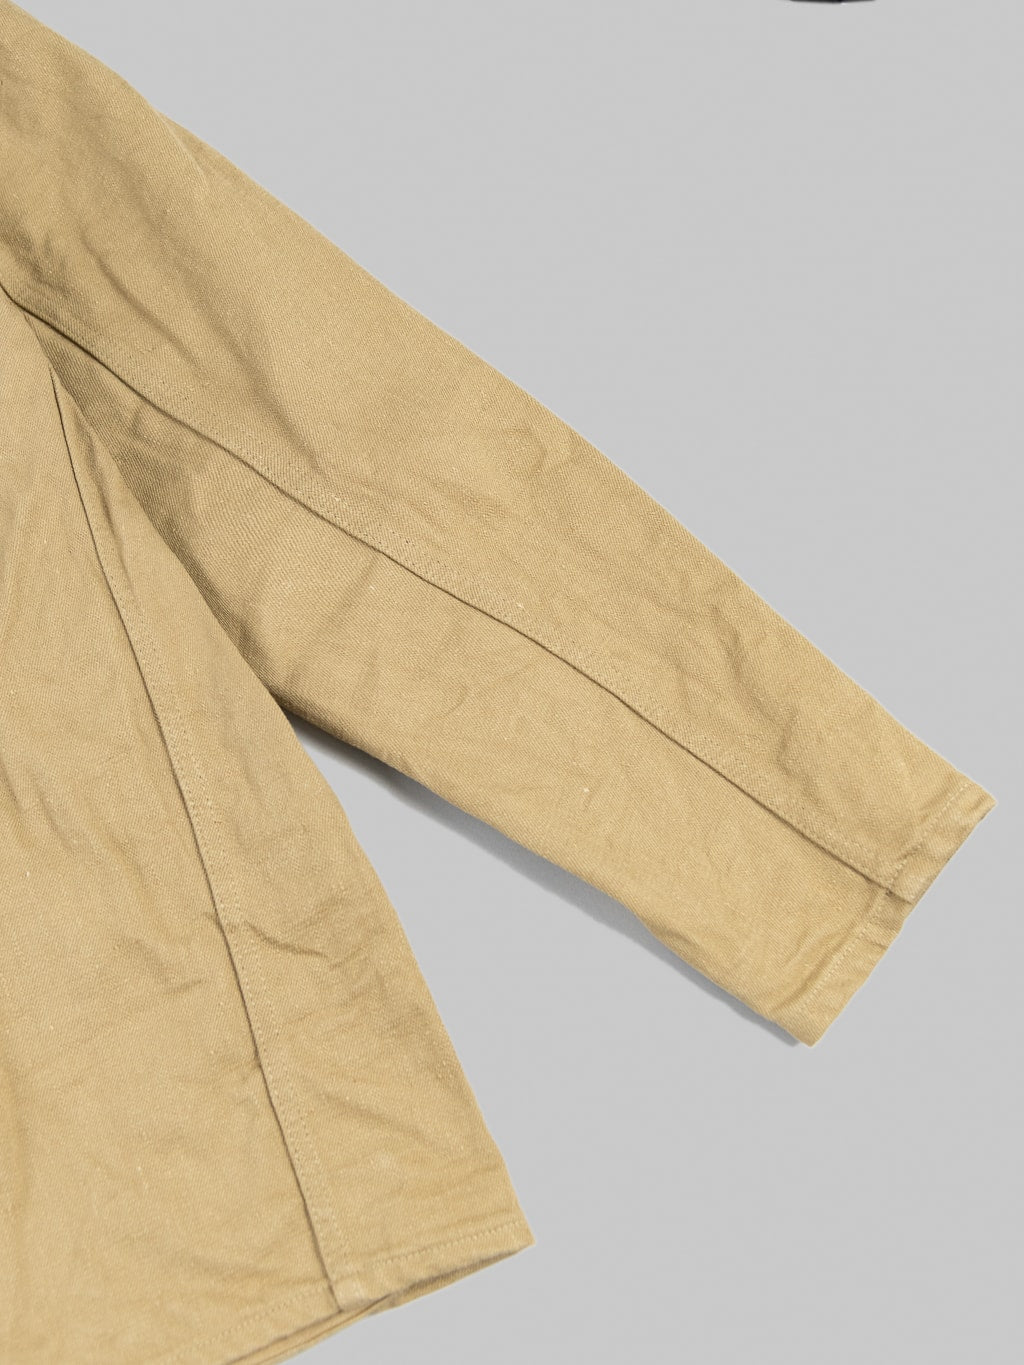 ONI Denim 03501 Sulfur Coverall Jacket Khaki Beige sleeve